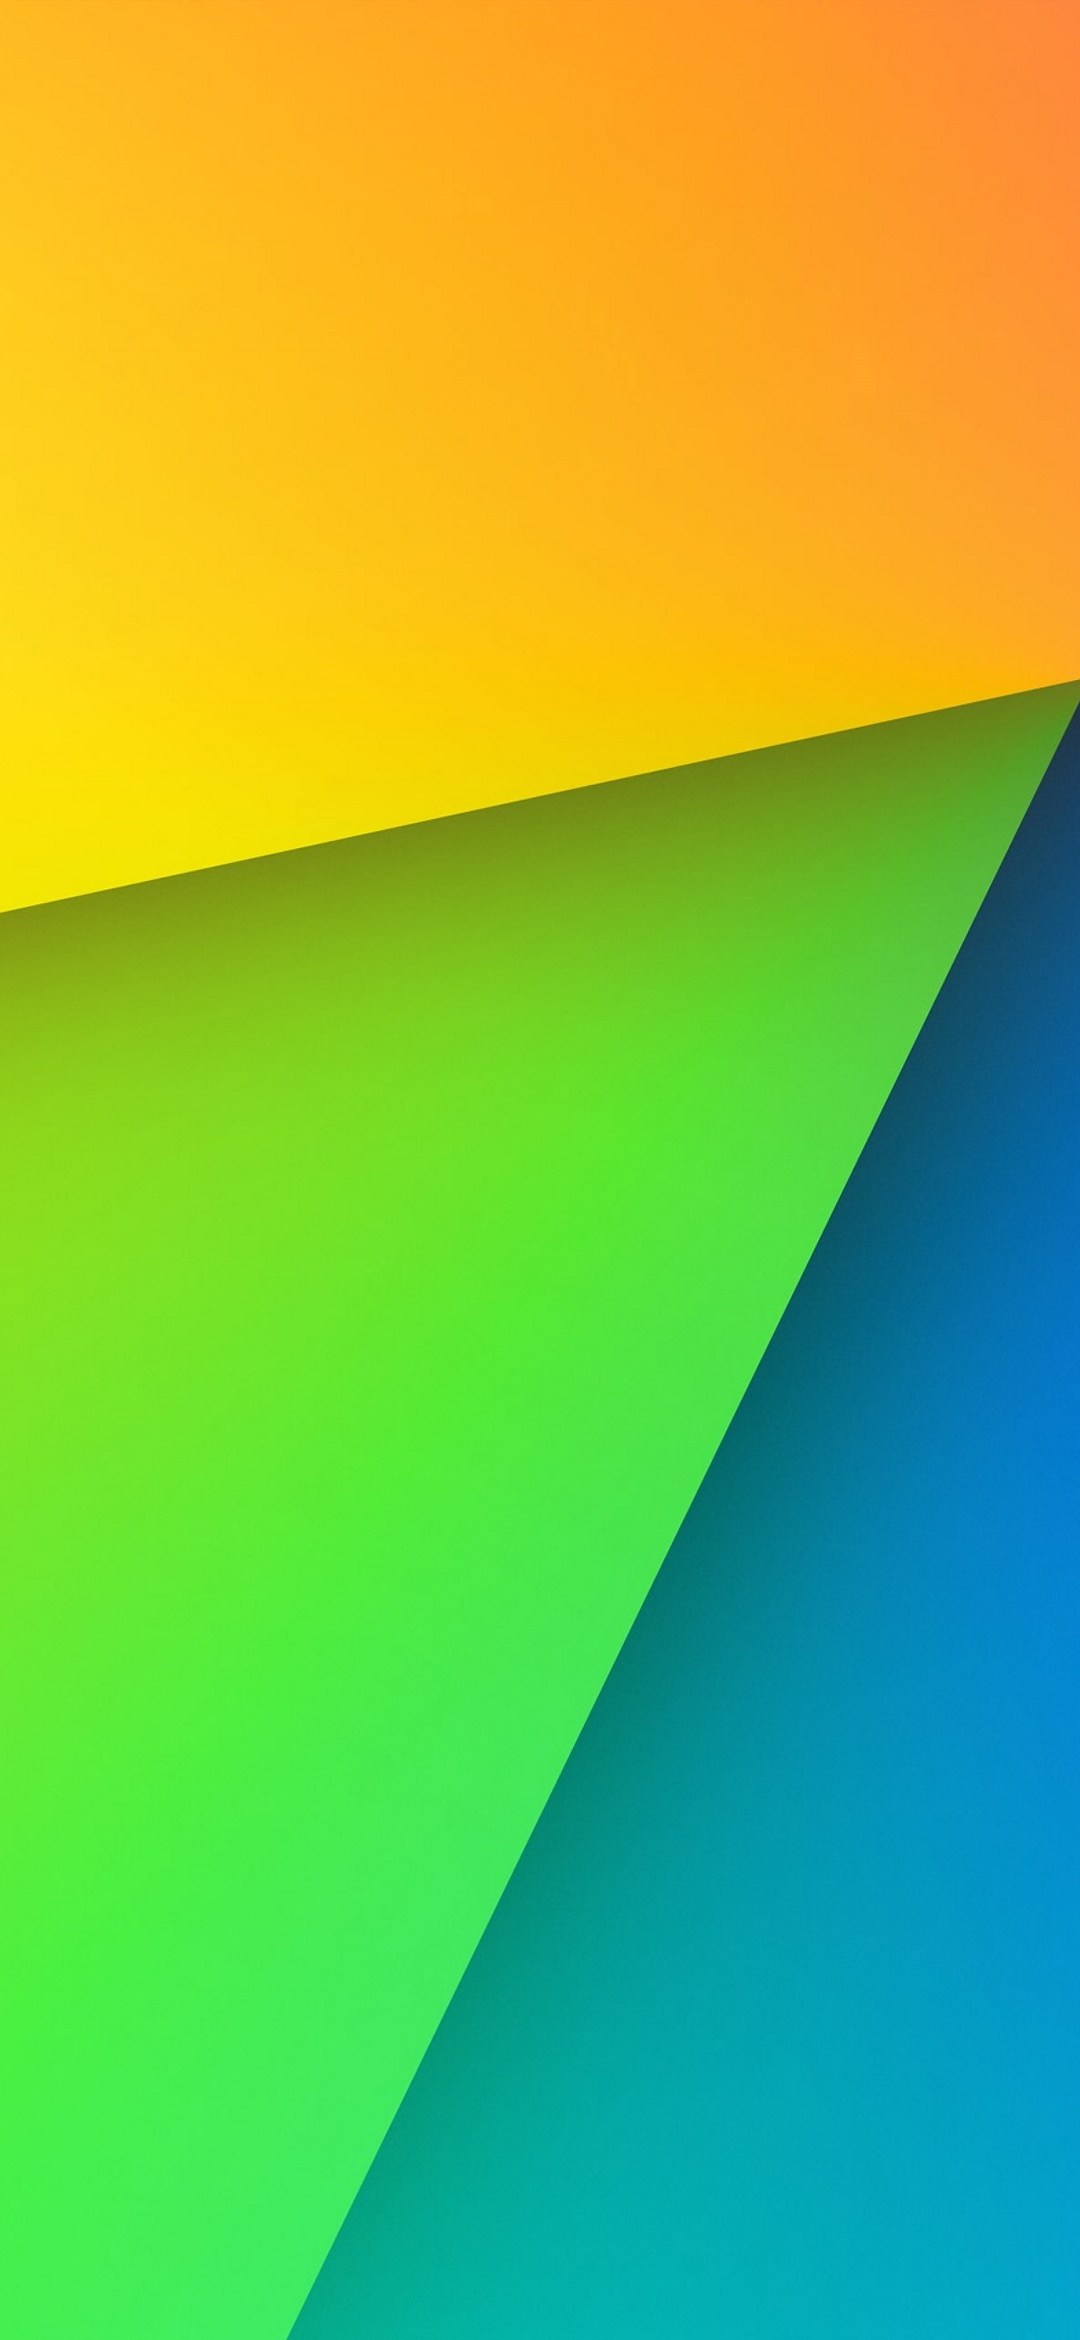 オレンジ 緑 青のグラデーション Google Pixel 5 Android 壁紙 待ち受け スマラン